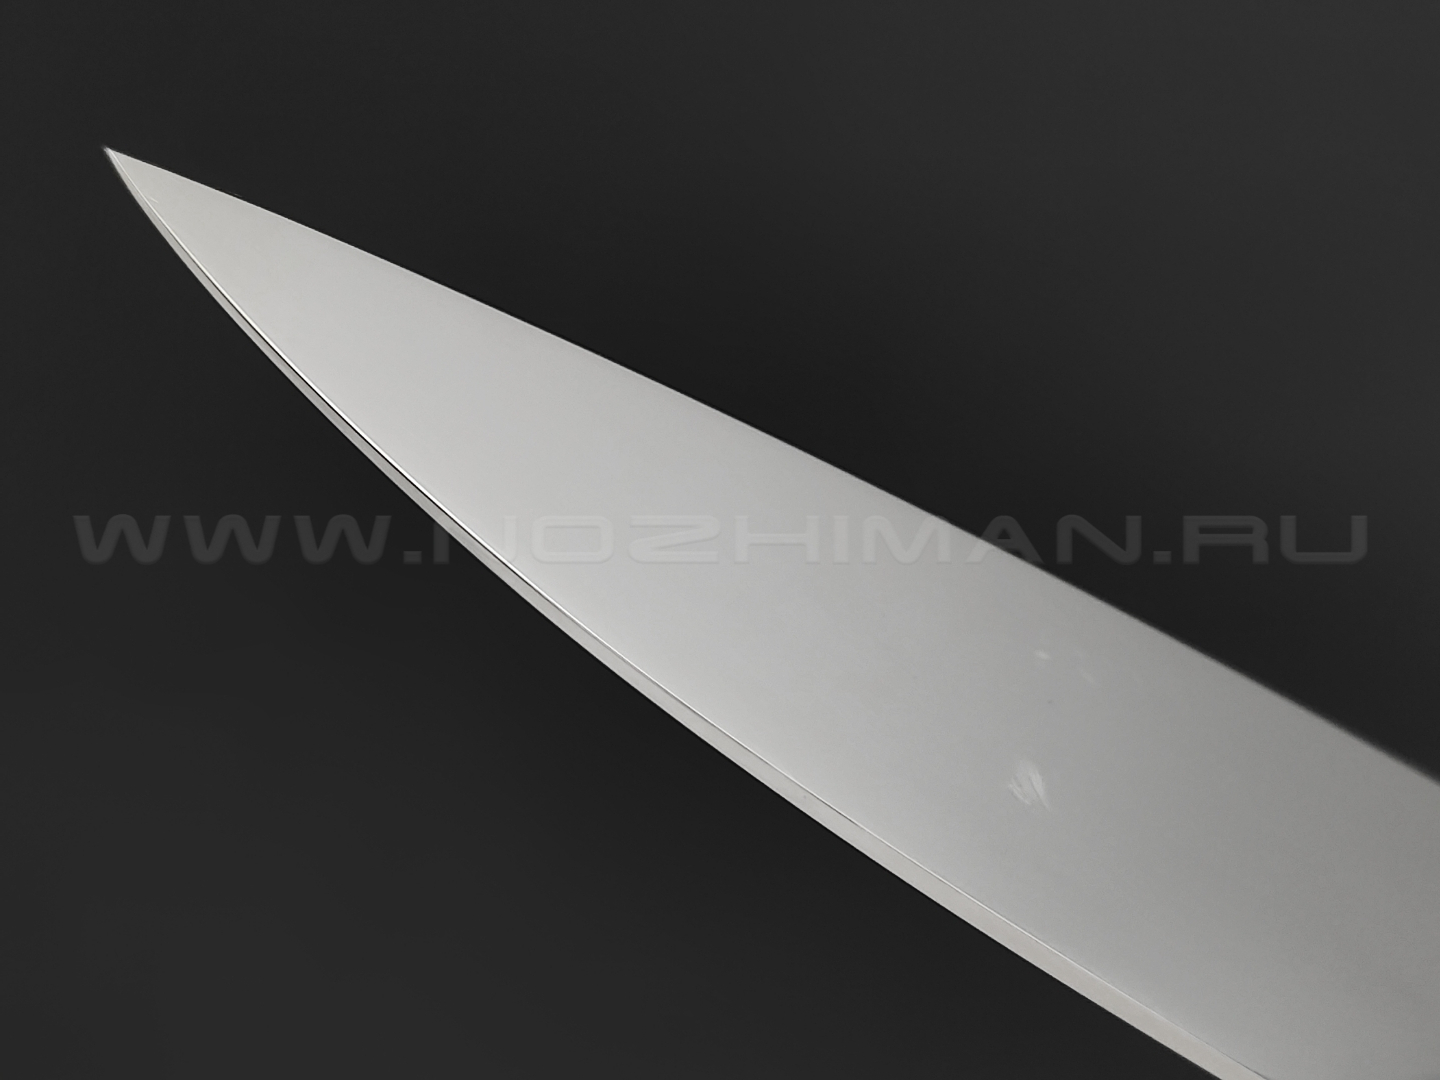 Кухонный нож Овощной №2, сталь N690, рукоять G10 black (Товарищество Завьялова)